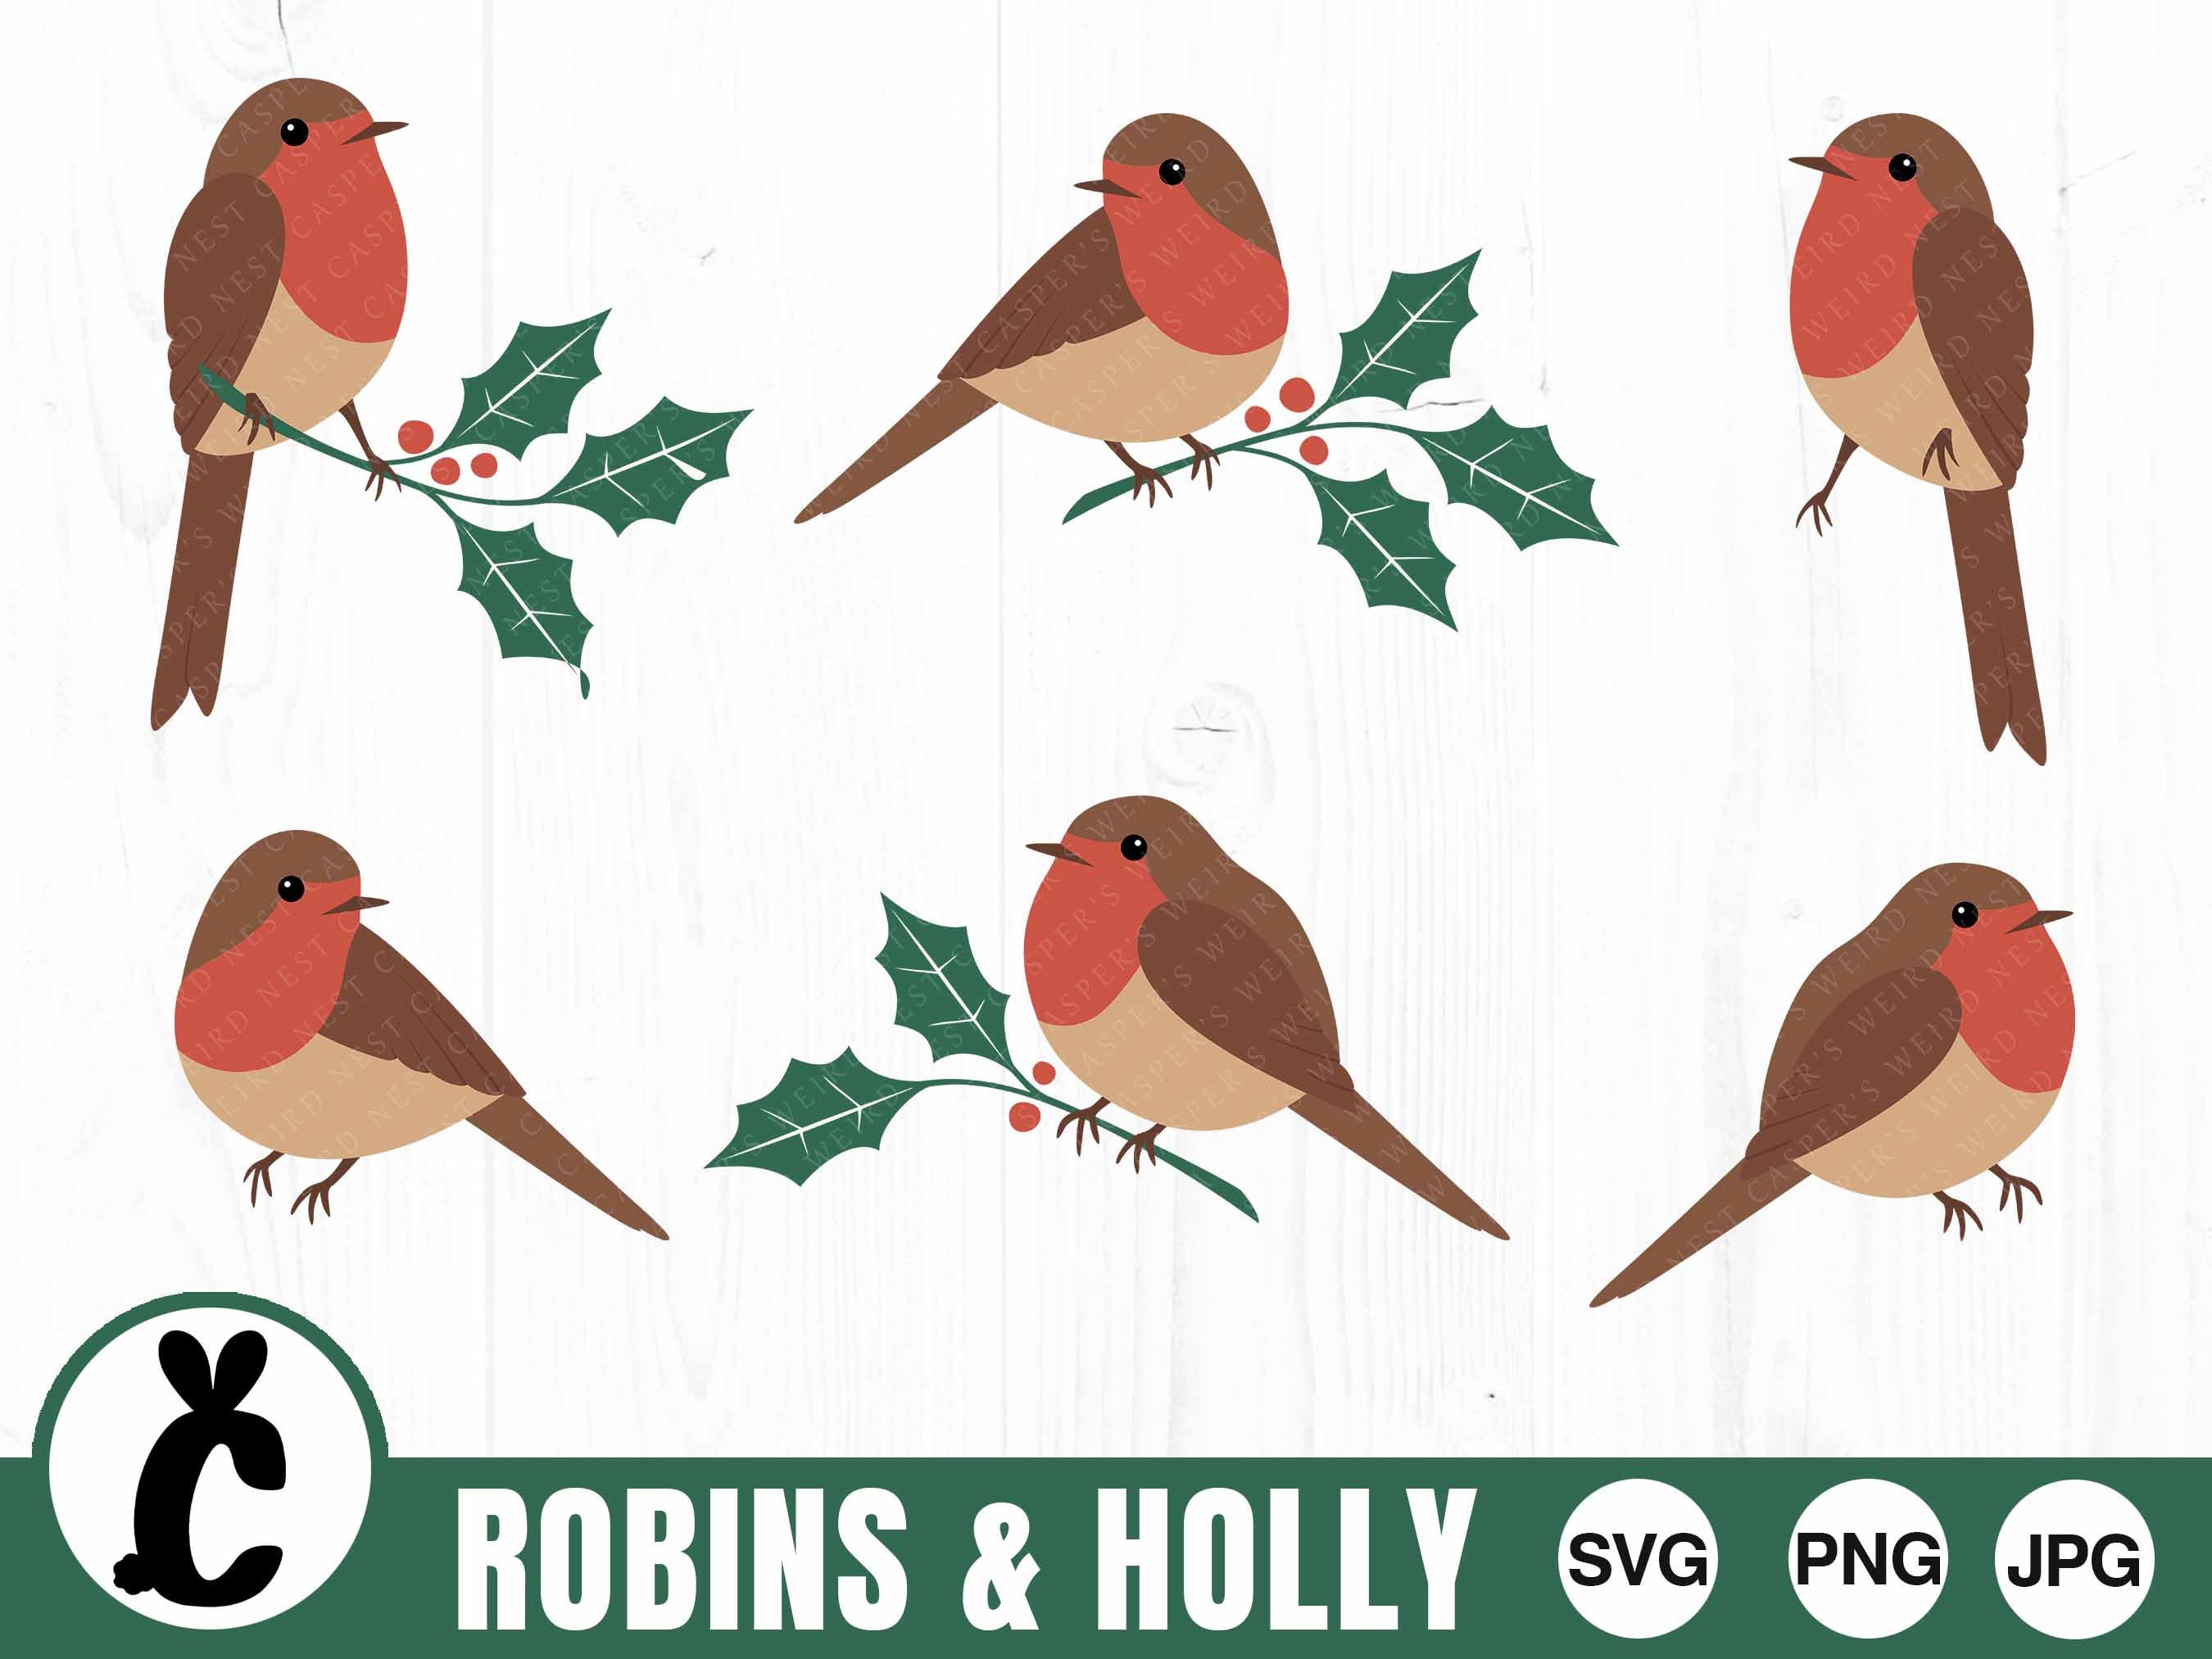 Robins & Holly Bundle SVG PNG JPG Digital Cut File - Etsy UK